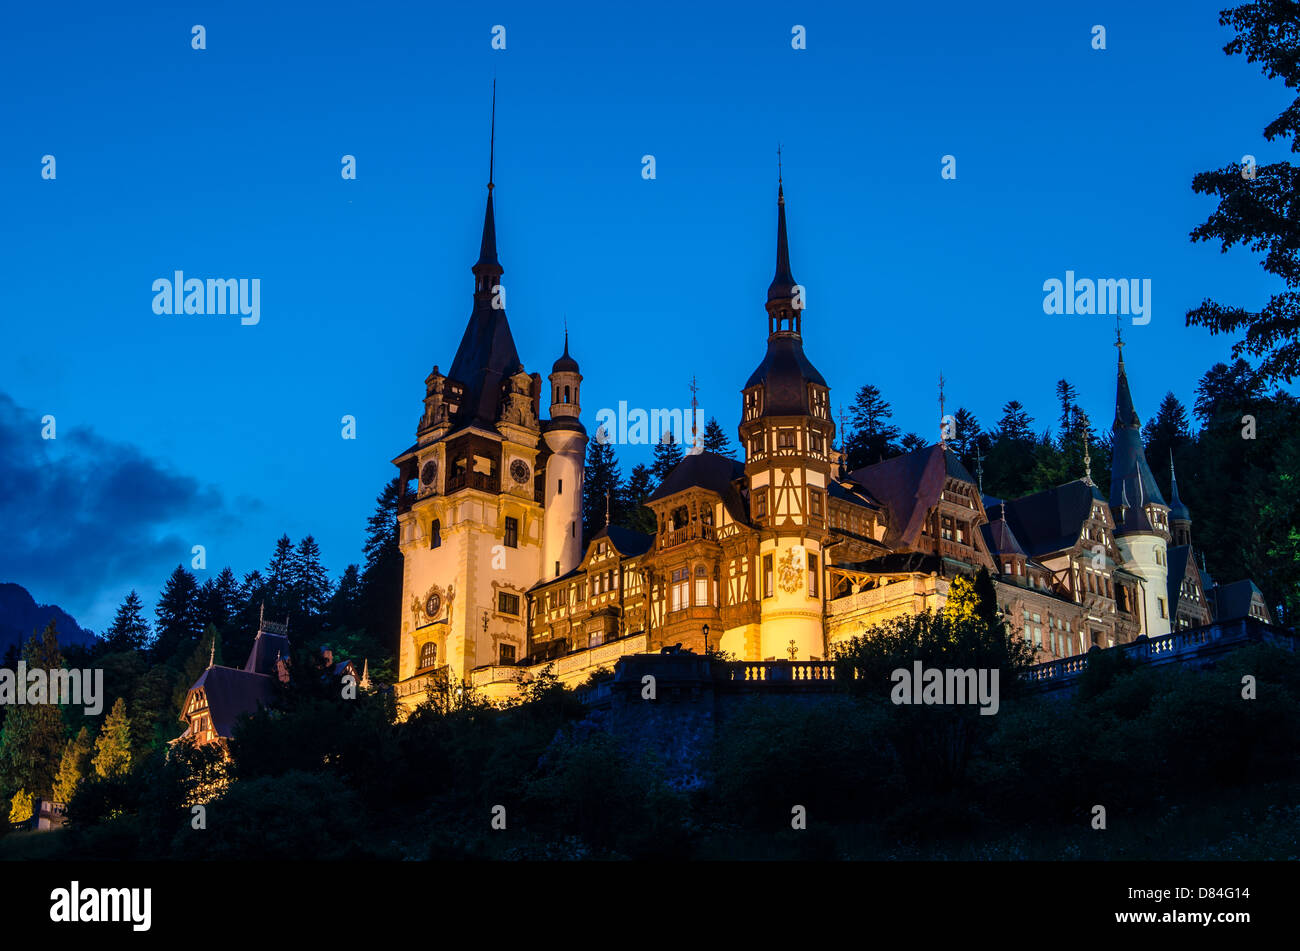 Vue de nuit sur le château de Peles de Sinaia, Prahova Valey Banque D'Images